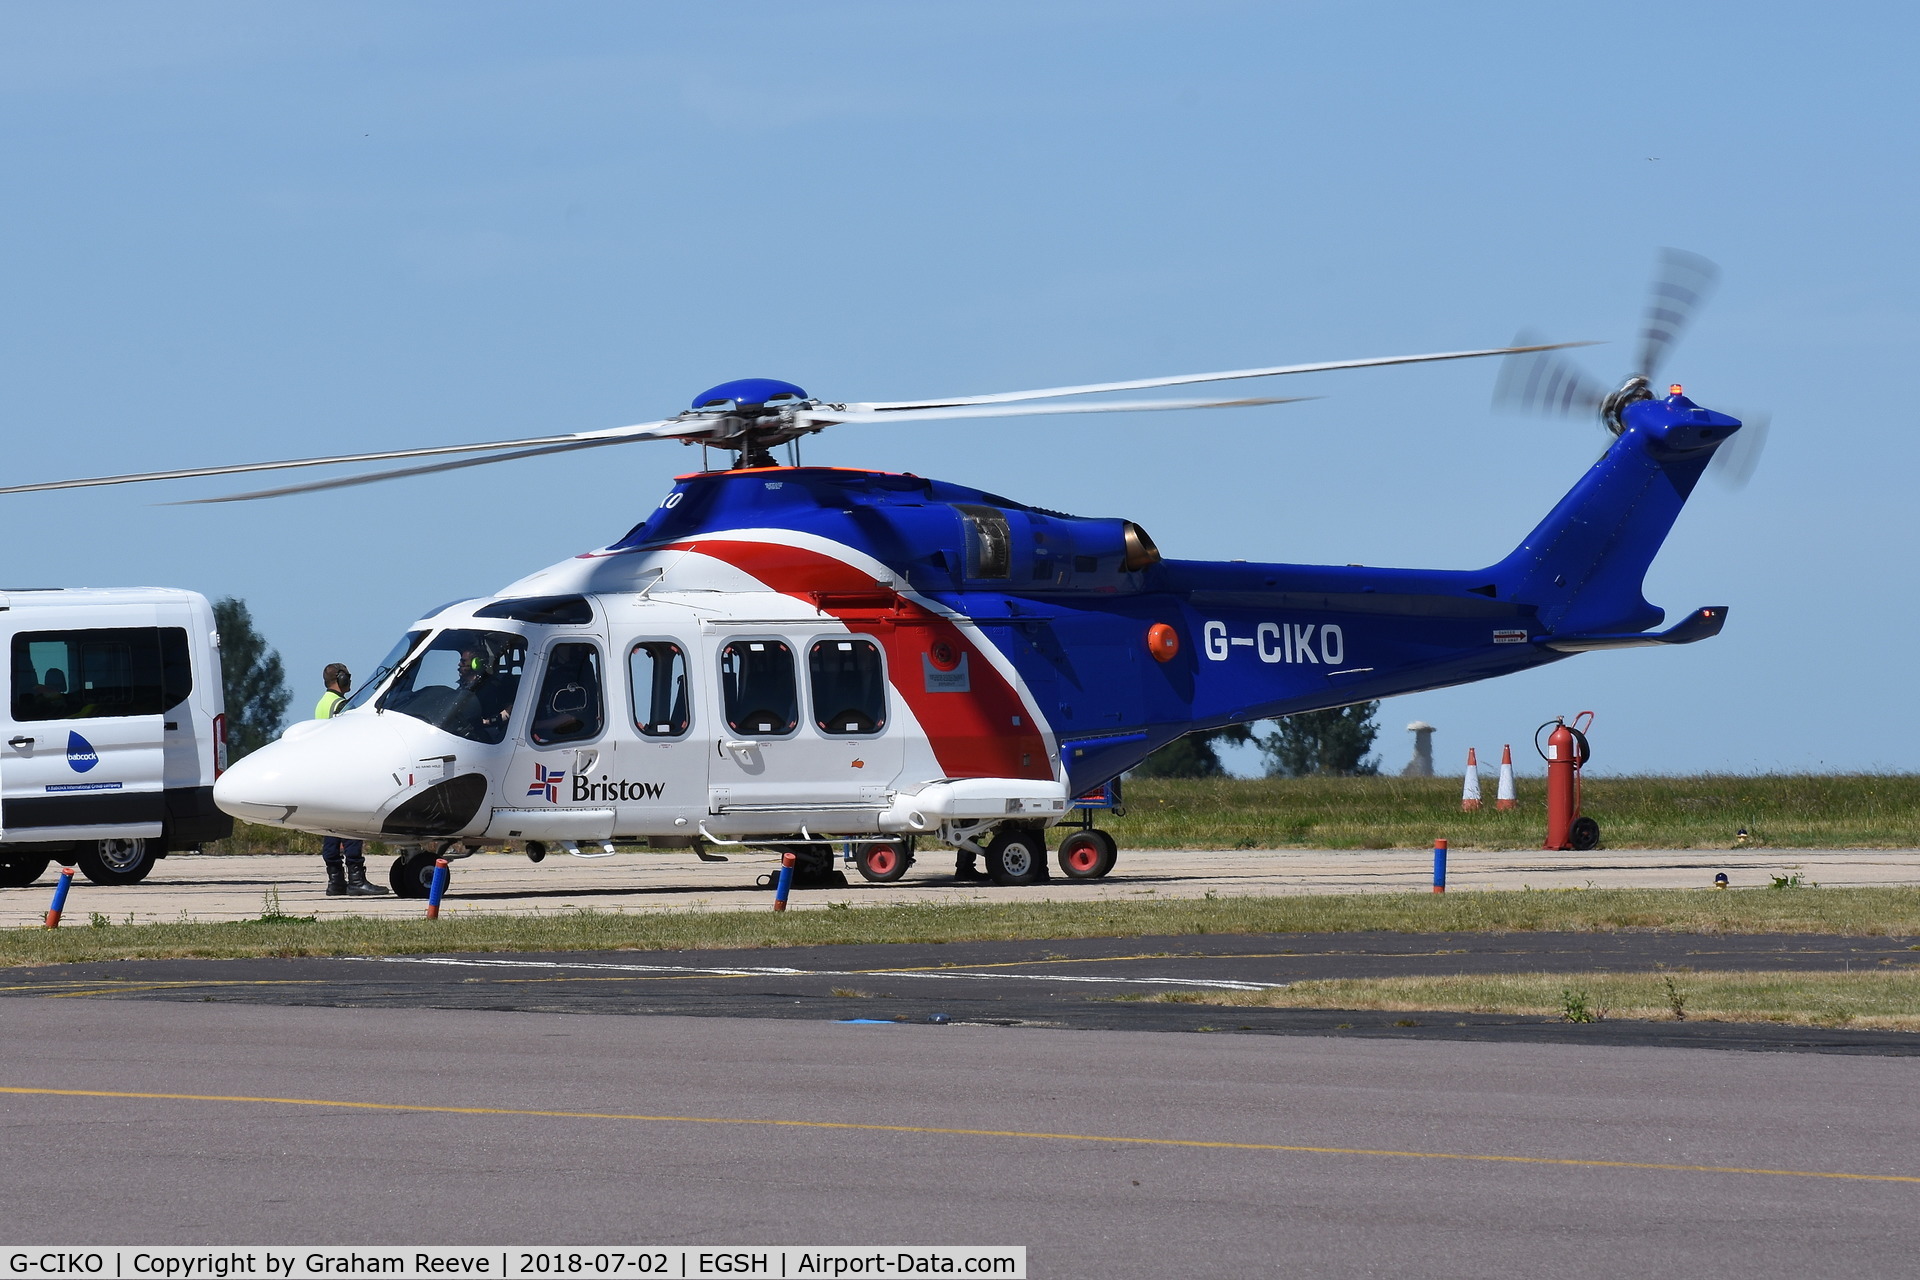 G-CIKO, 2014 AgustaWestland AW-139 C/N 41378, Just landed at Norwich.